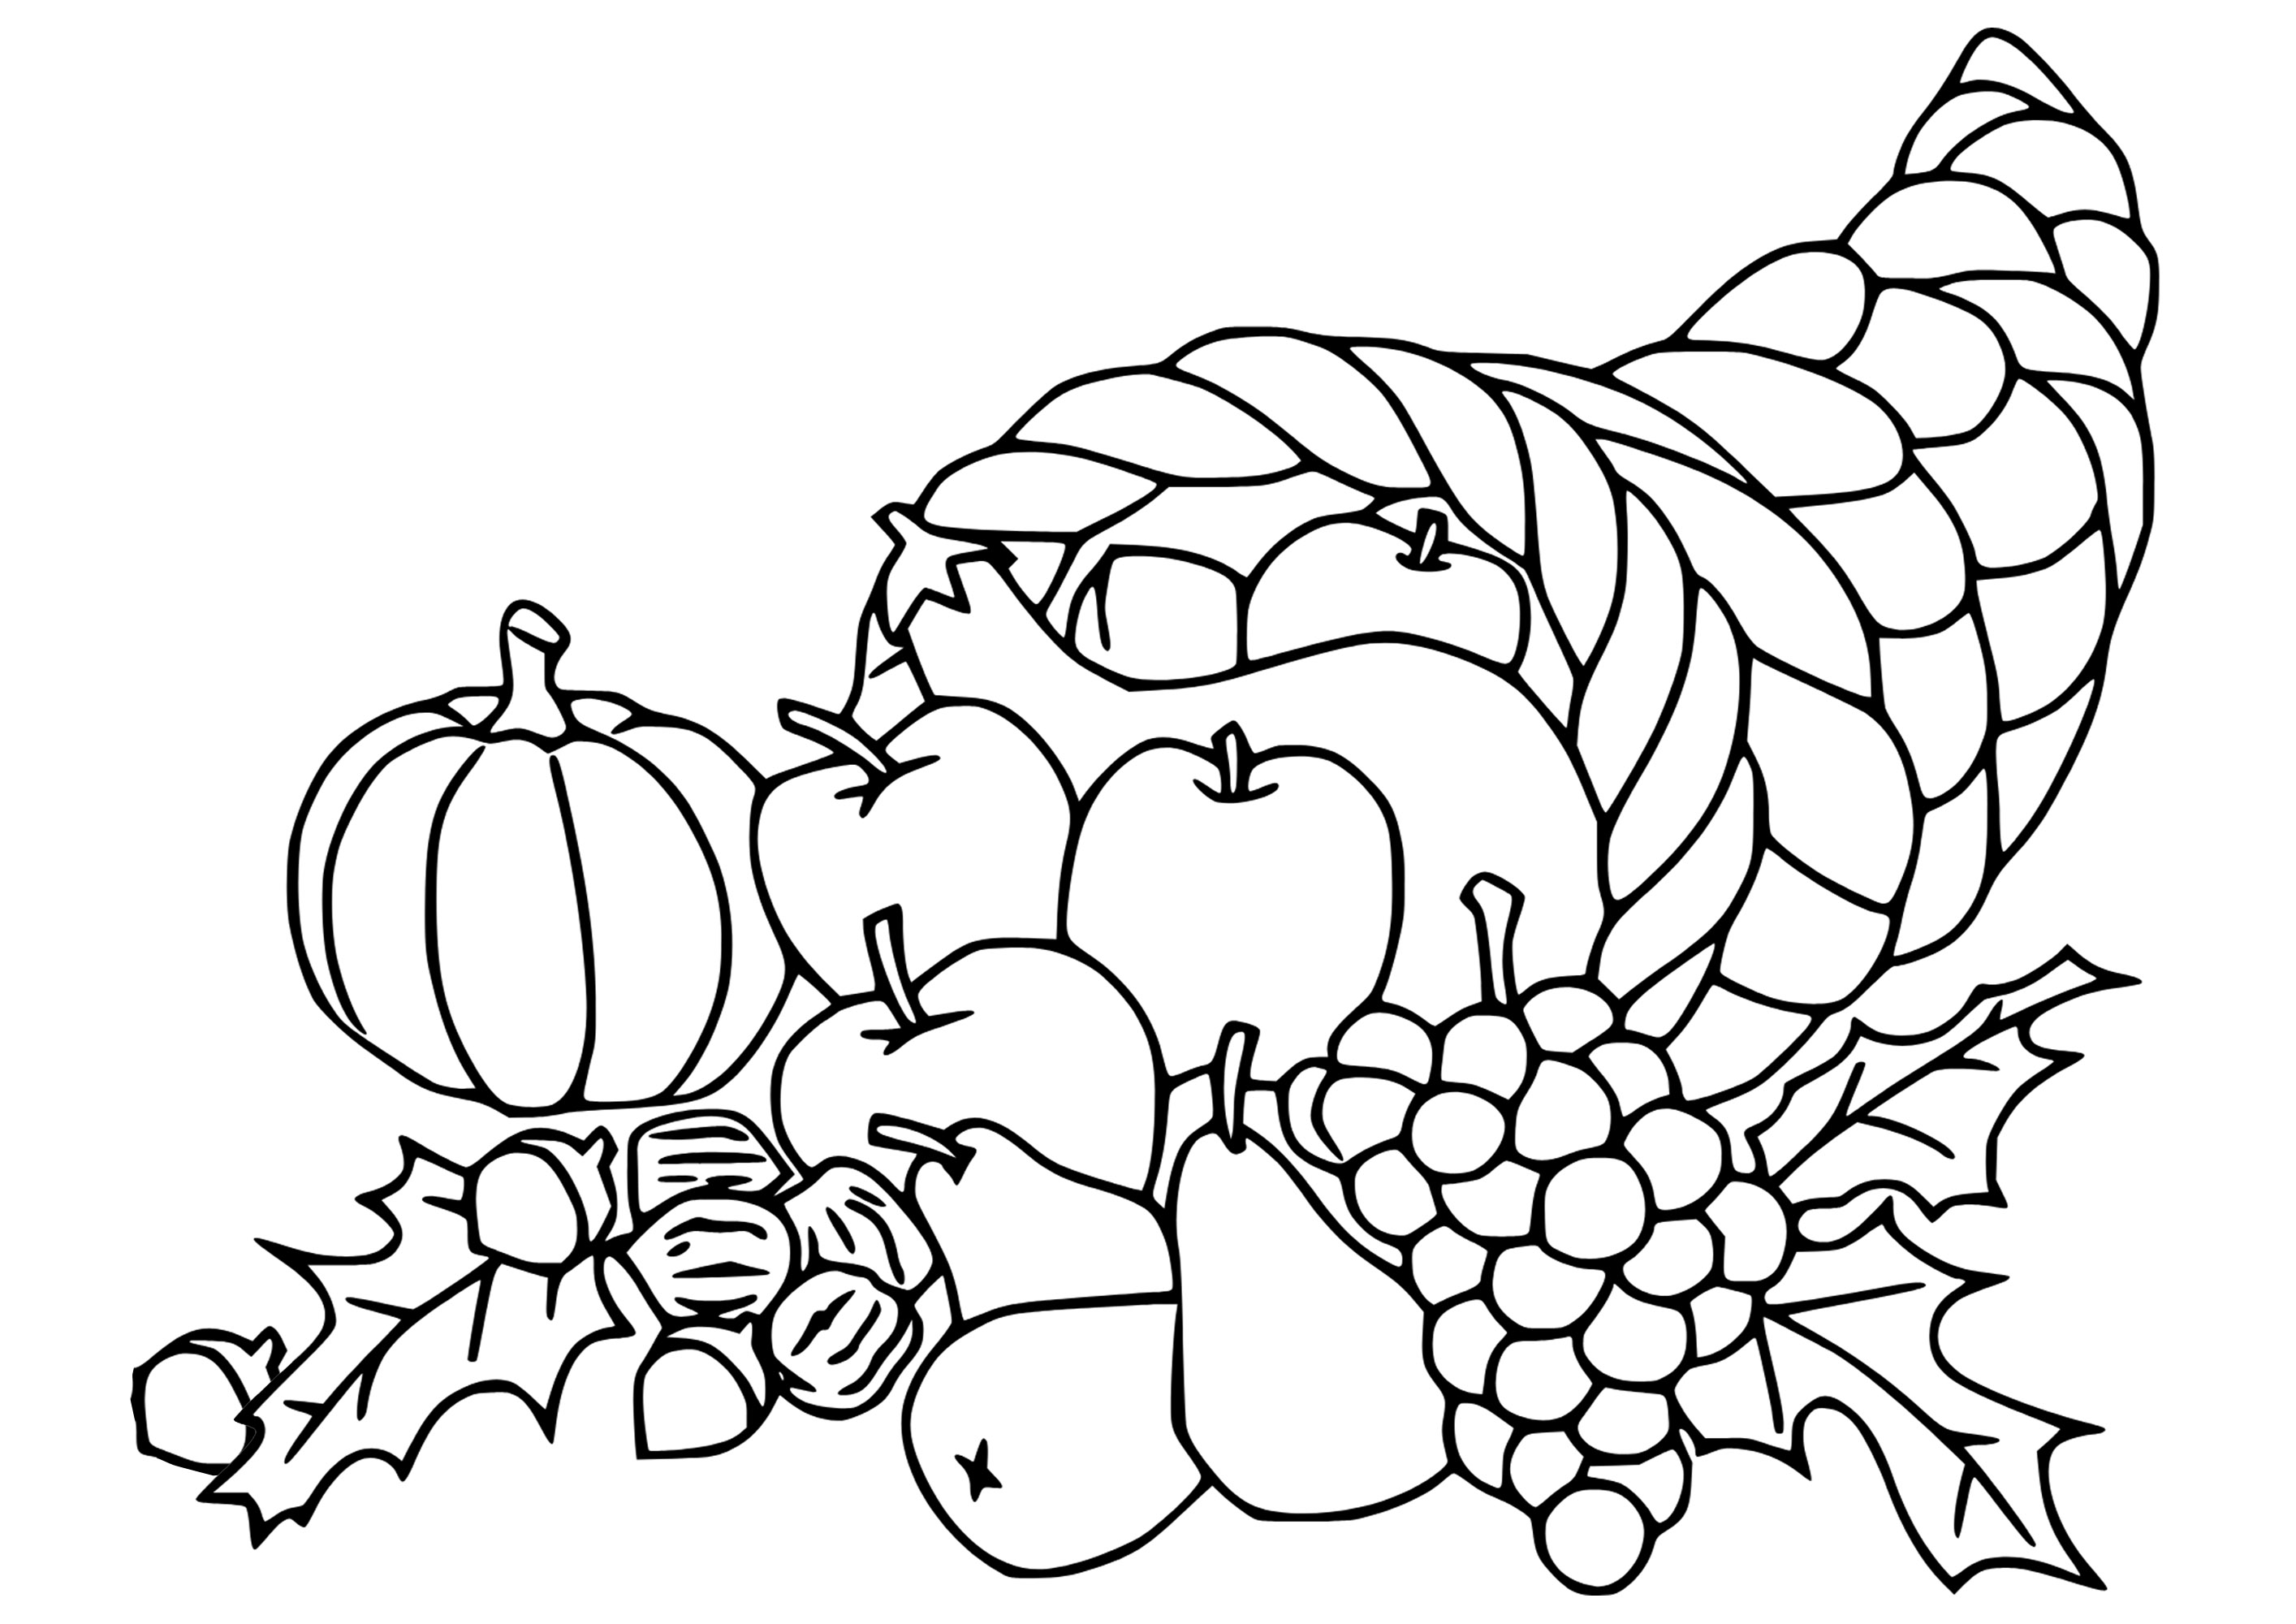 Corne d'abondance de la Ação de graças (Thanksgiving). Alguns frutos e legumes desenhados de forma simples na forma desta cornucópia